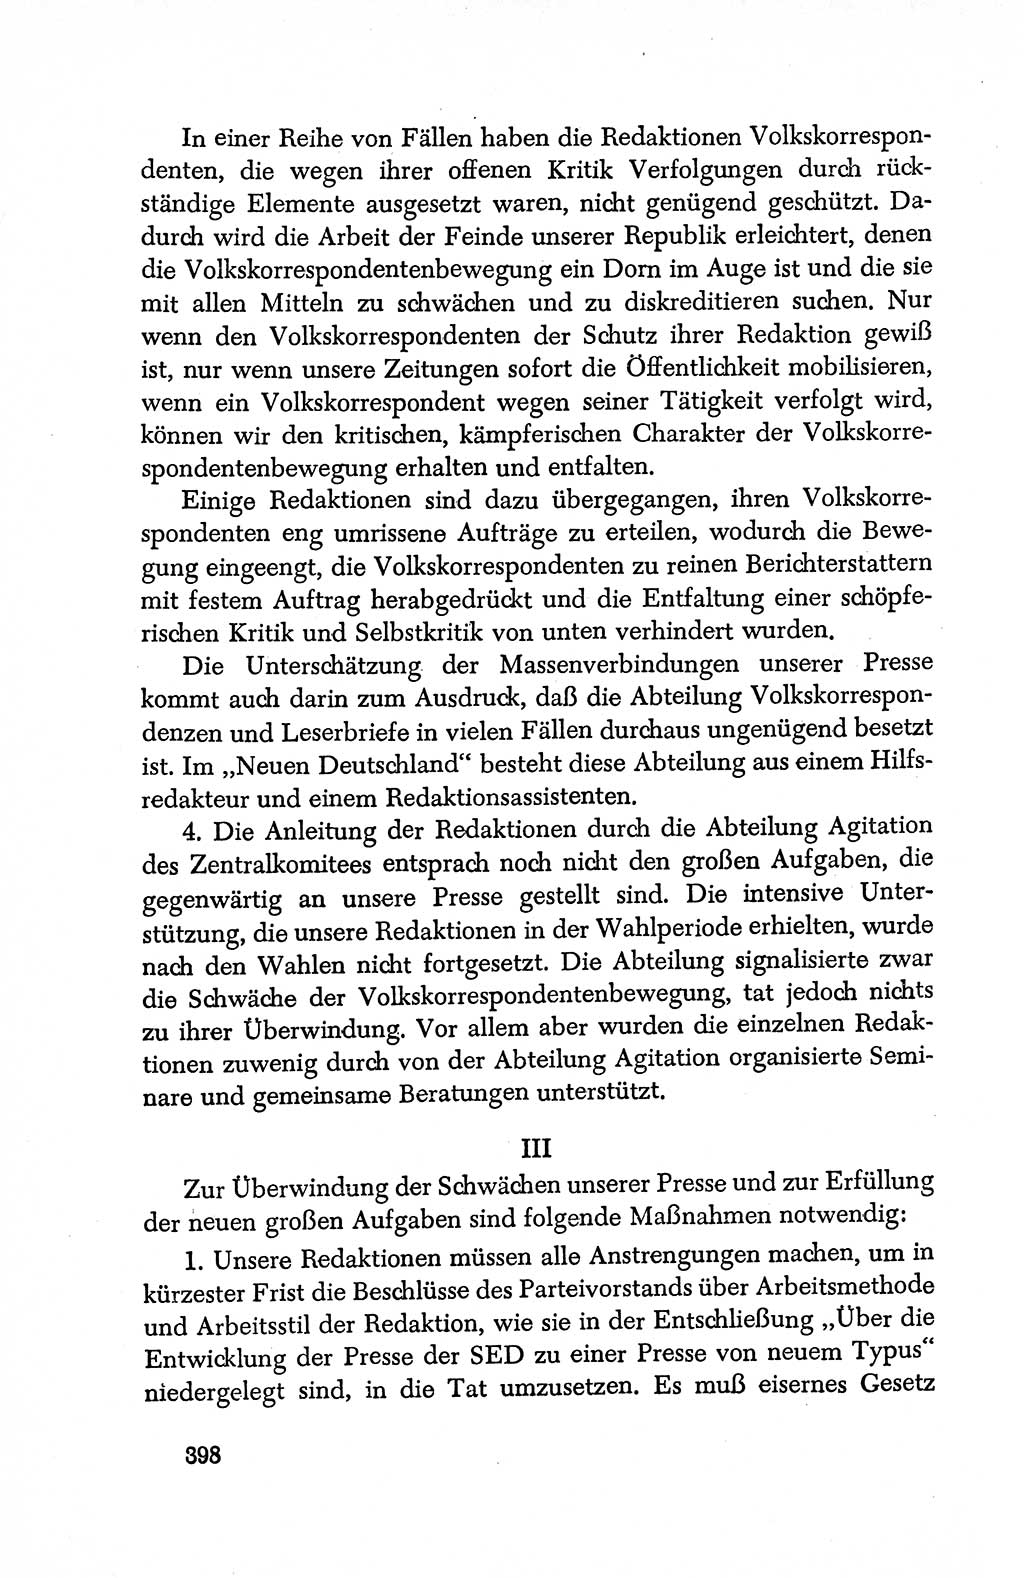 Dokumente der Sozialistischen Einheitspartei Deutschlands (SED) [Deutsche Demokratische Republik (DDR)] 1950-1952, Seite 398 (Dok. SED DDR 1950-1952, S. 398)